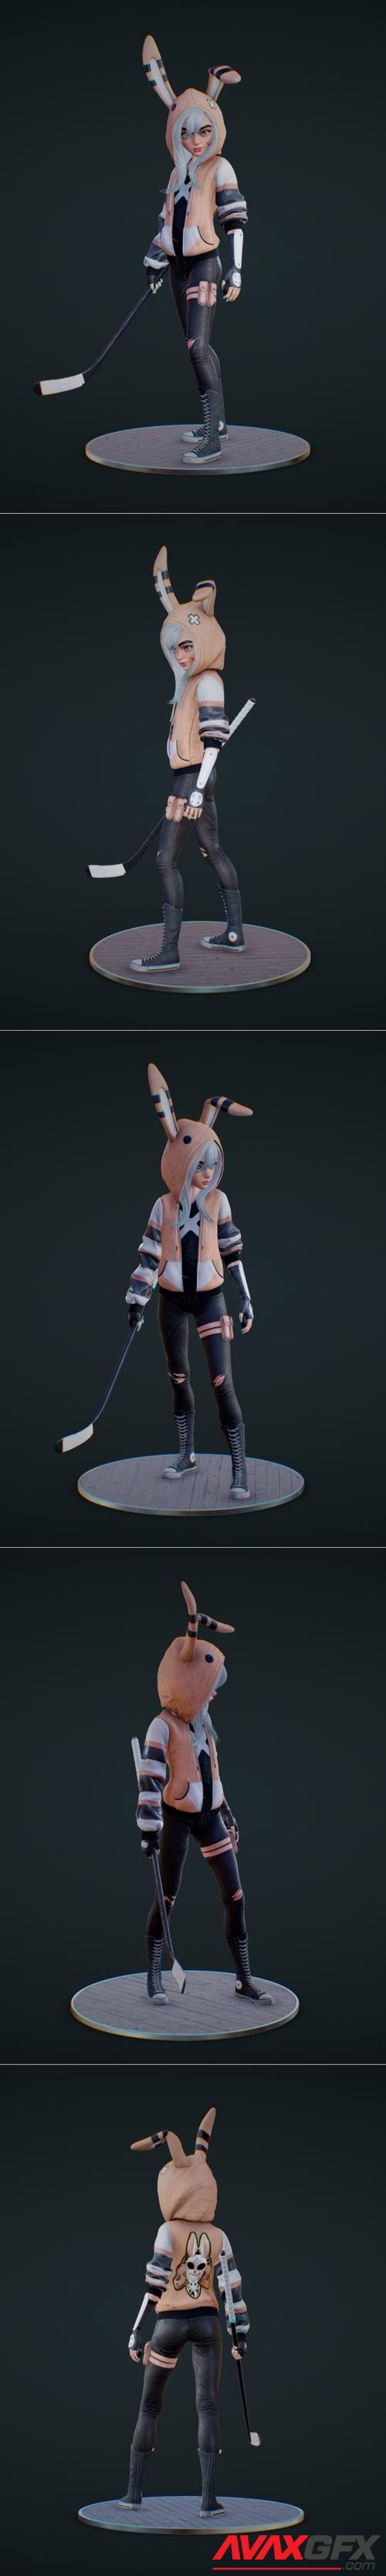 Vinca The Bad Bunny – 3D Print